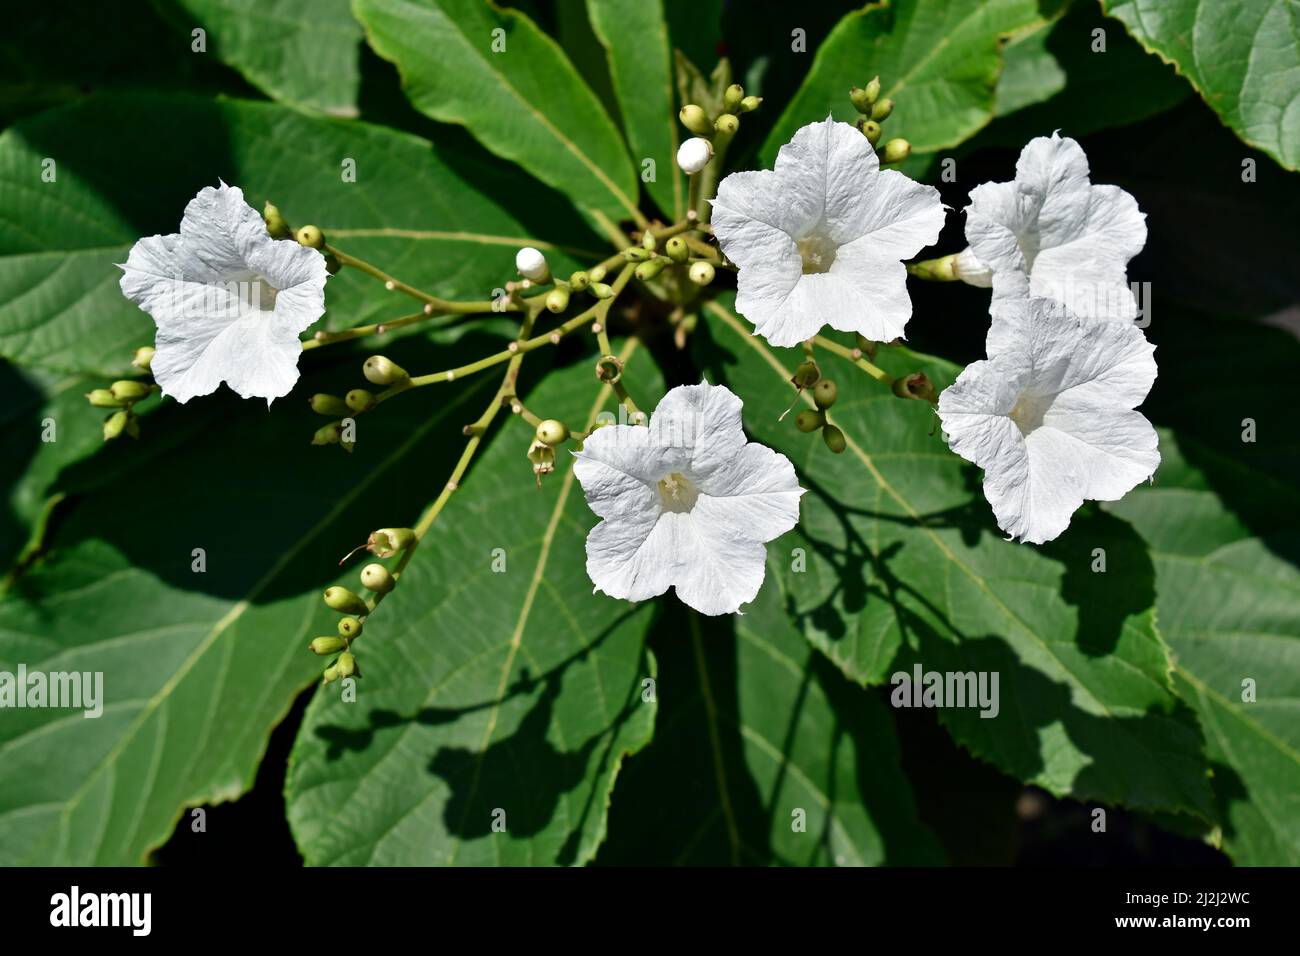 White flowers on tree (Cordia superba) Stock Photo